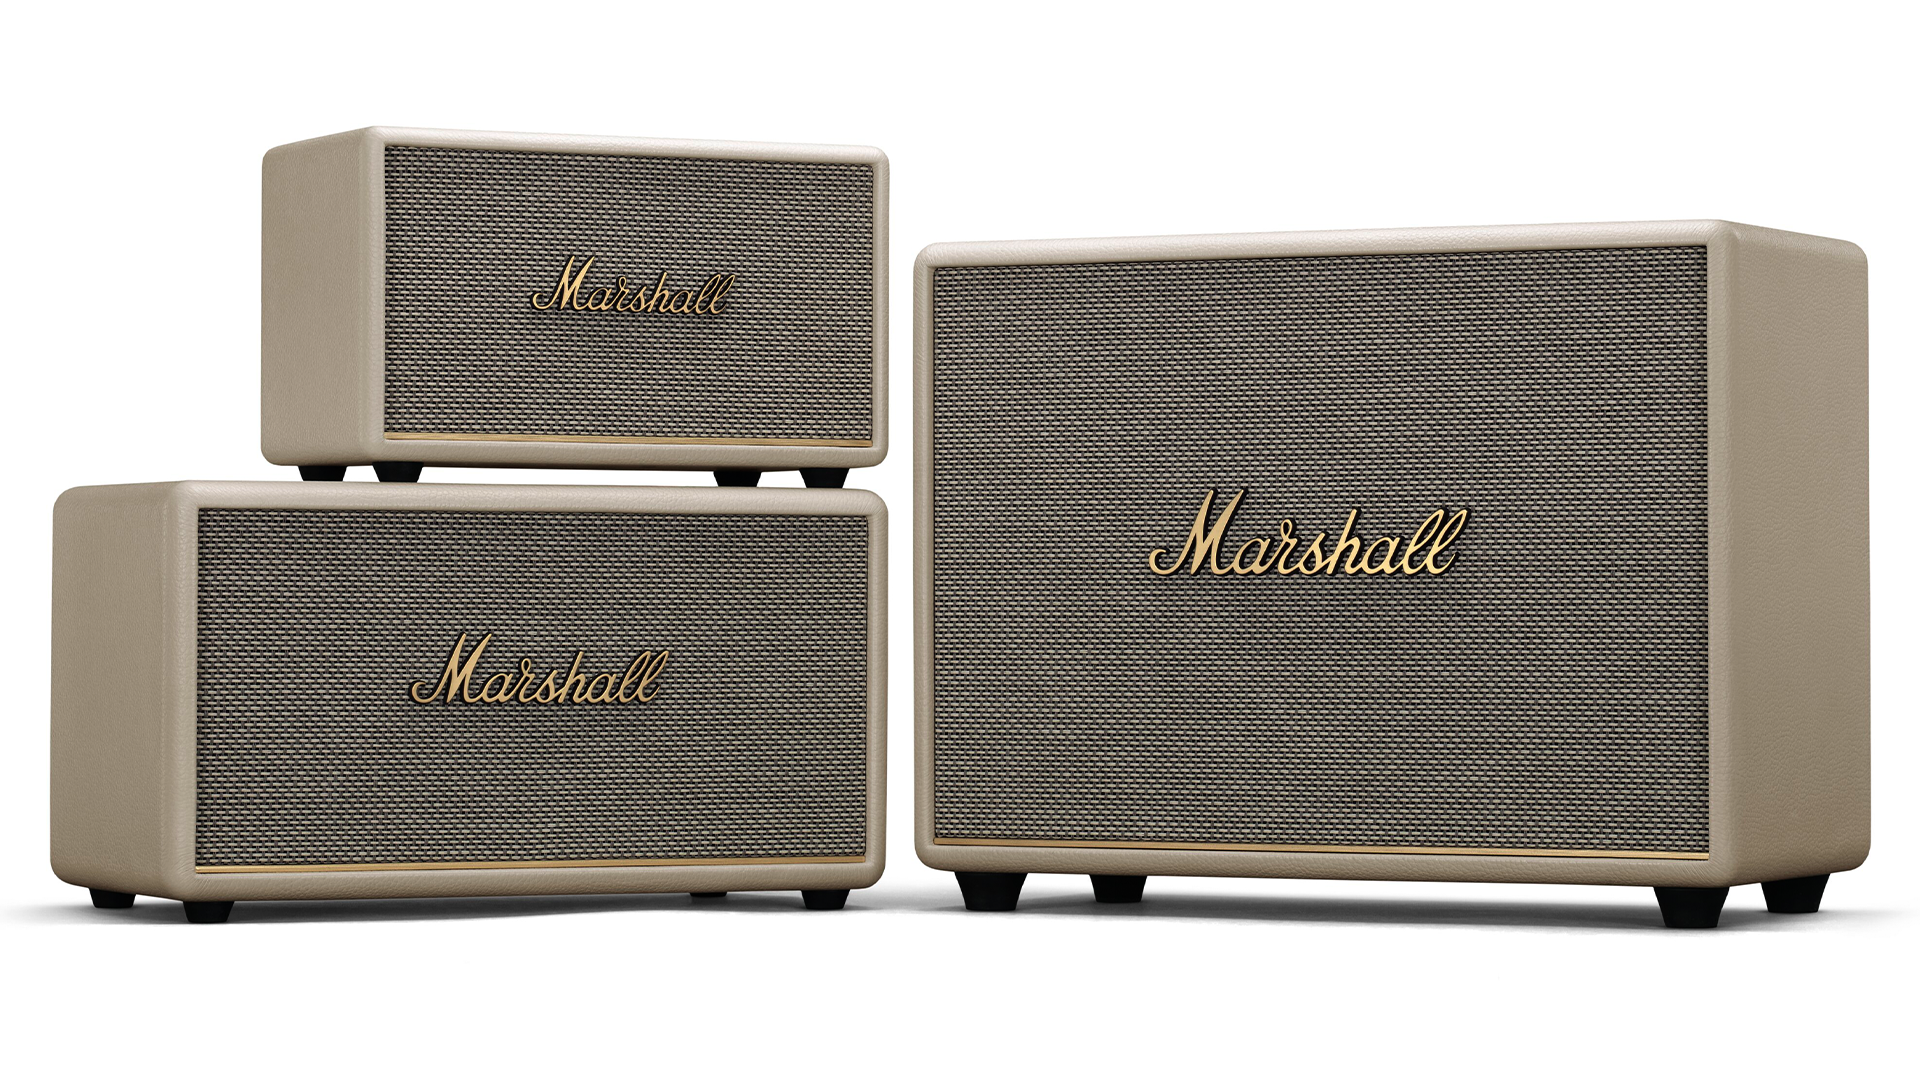 Marshall's third gen speakers in white.